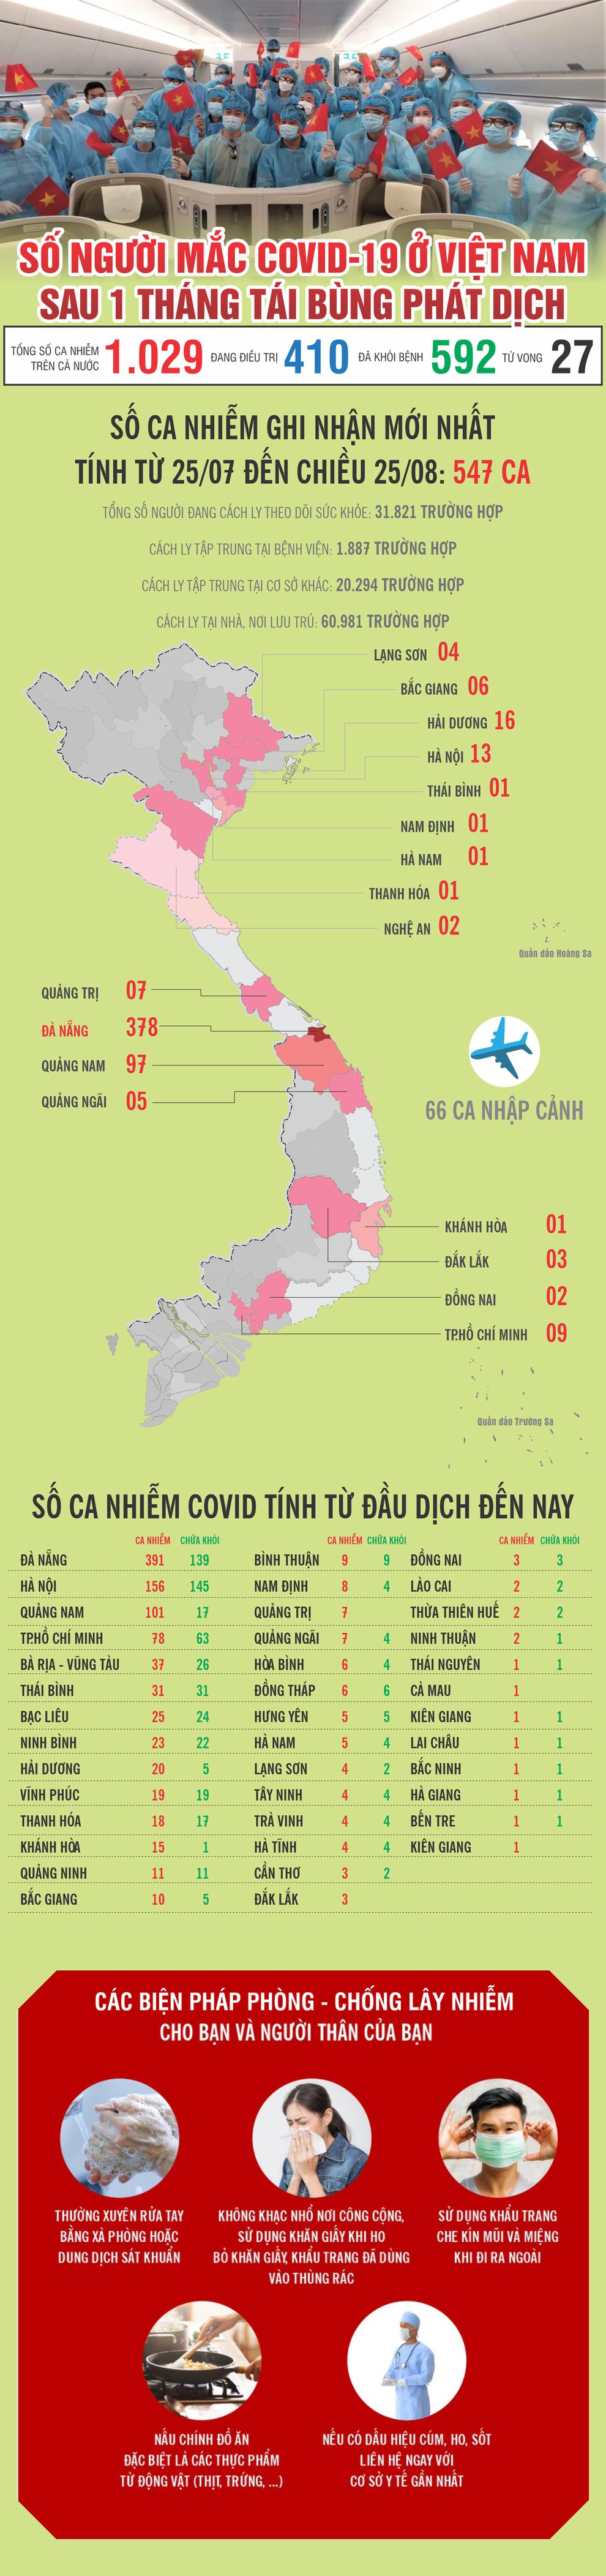 Việt Nam sau 1 tháng tái bùng phát dịch Covid-19 trong cộng đồng